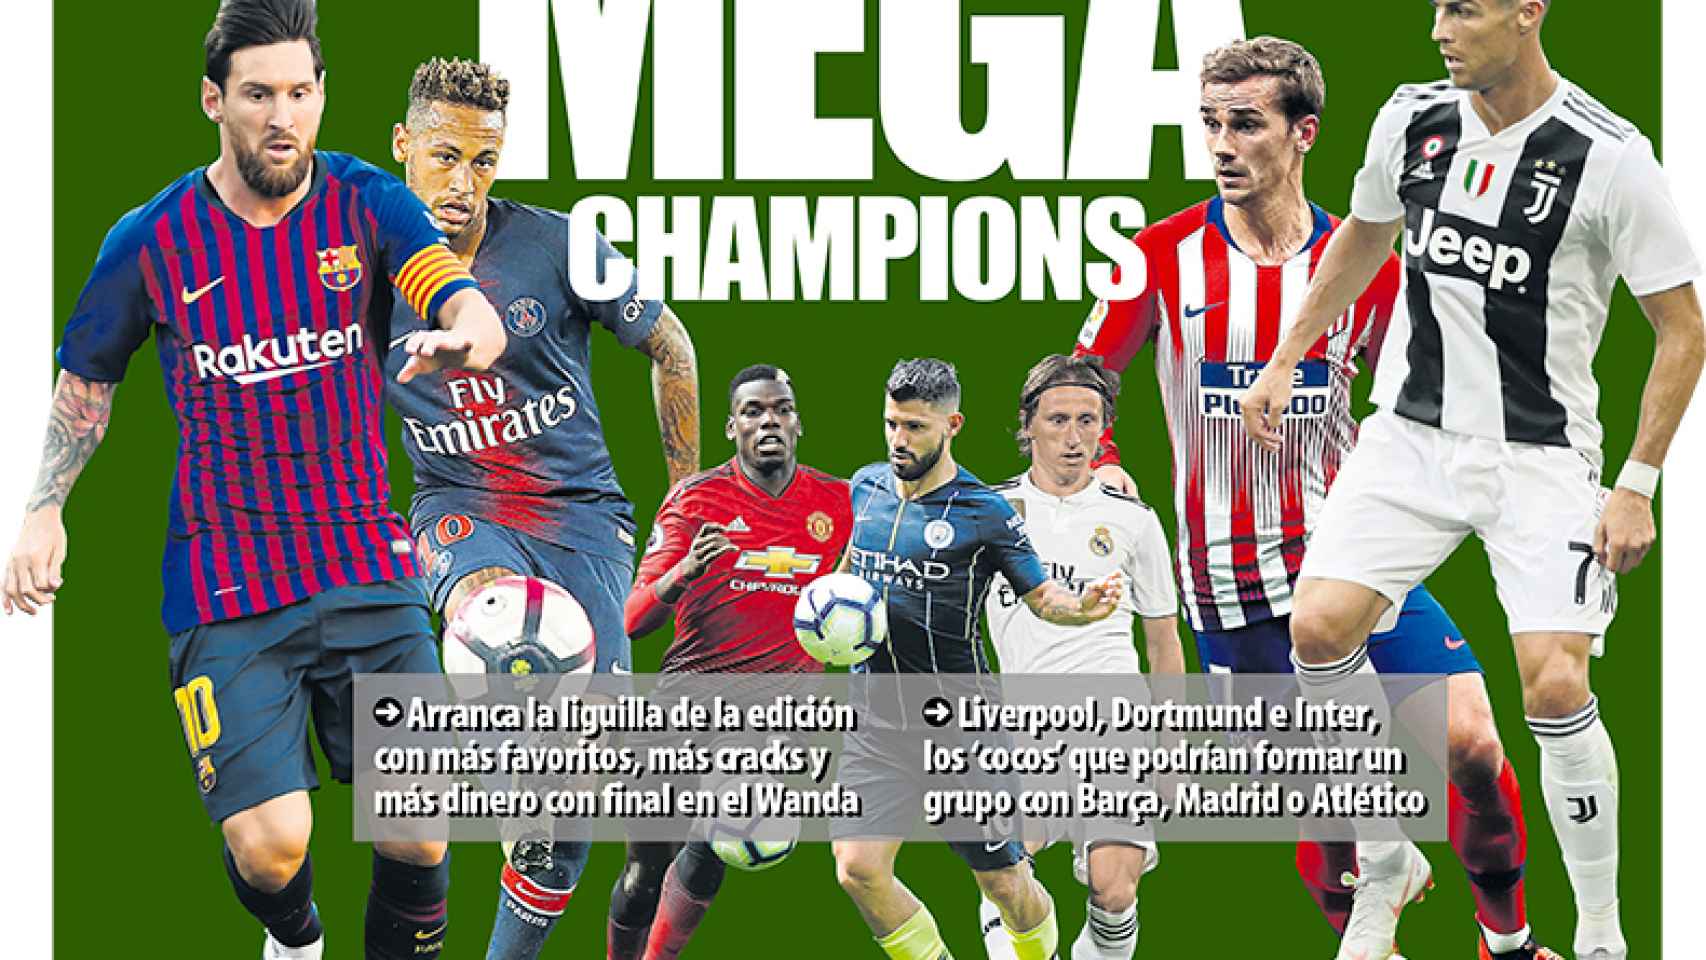 La portada del diario Mundo Deportivo (30/08/2018)